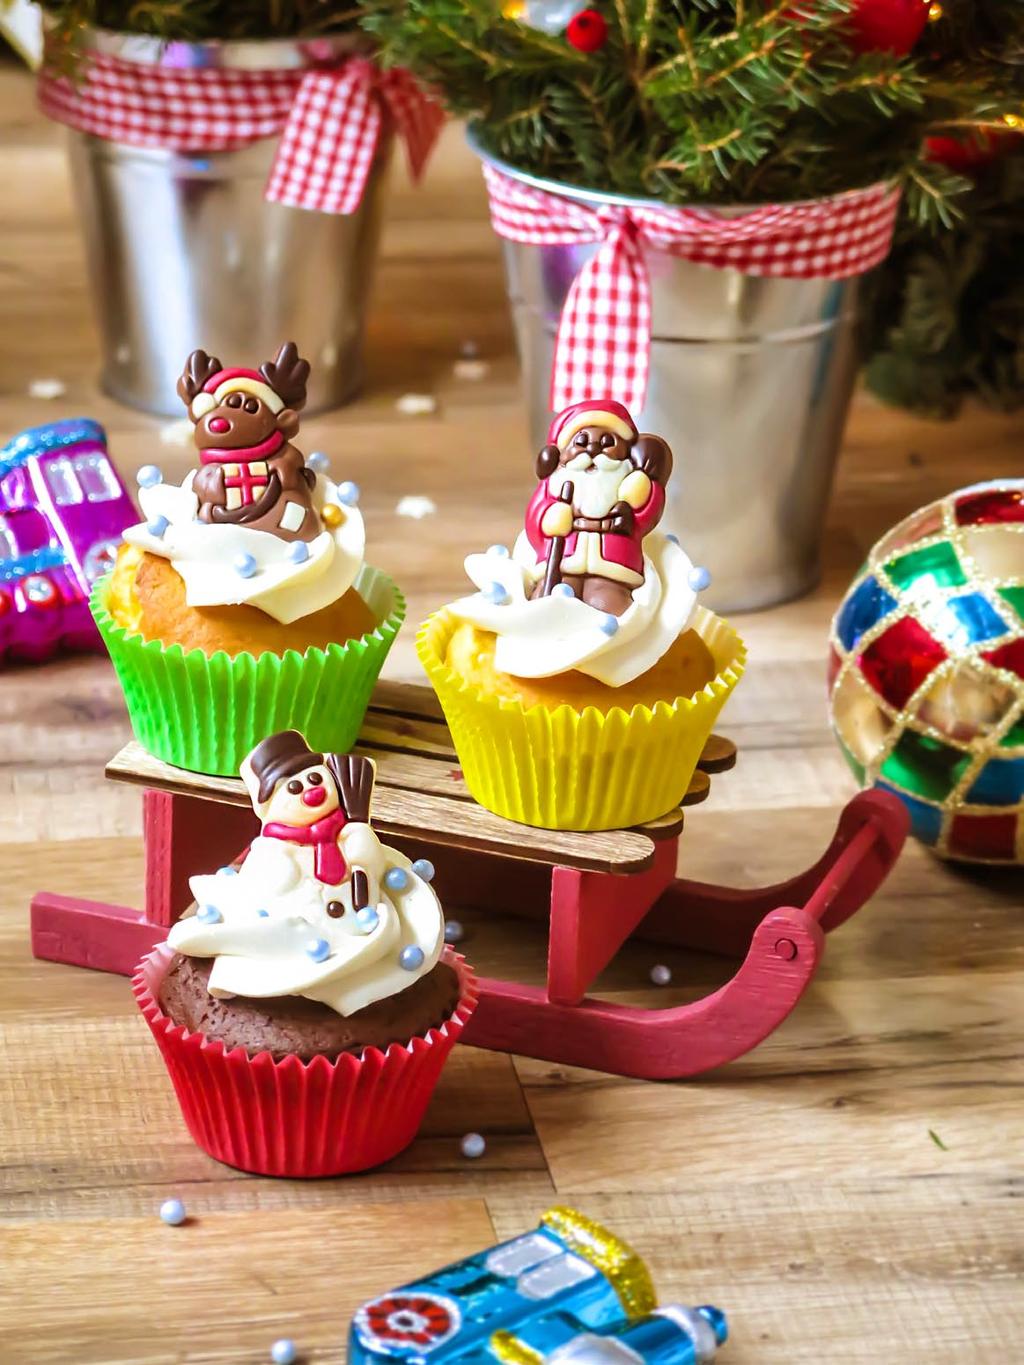 Pyszne cupcakes (dekorowane mufﬁny) z bogatym, aromatycznym wnętrzem 8 99 Pakowane po 6 lub 12szt zbiorczo lub możliwość pakowania w pojedyncze, 1.Logotyp jadalny (od 10szt) 2.